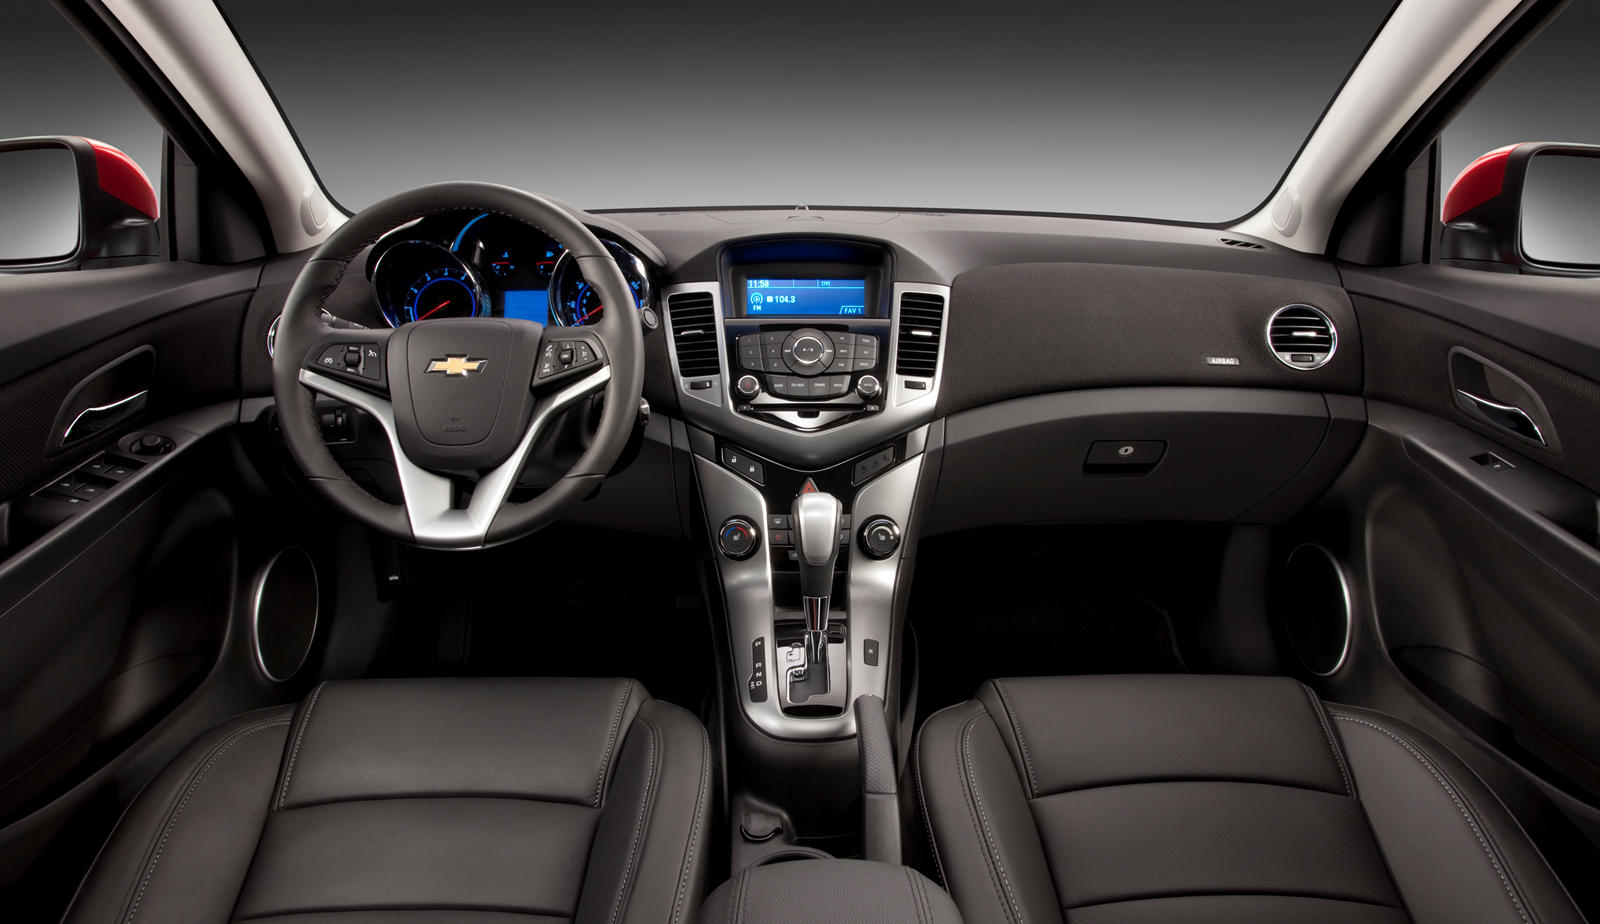 2013 Chevrolet Cruze Sedan Interior Photos | CarBuzz